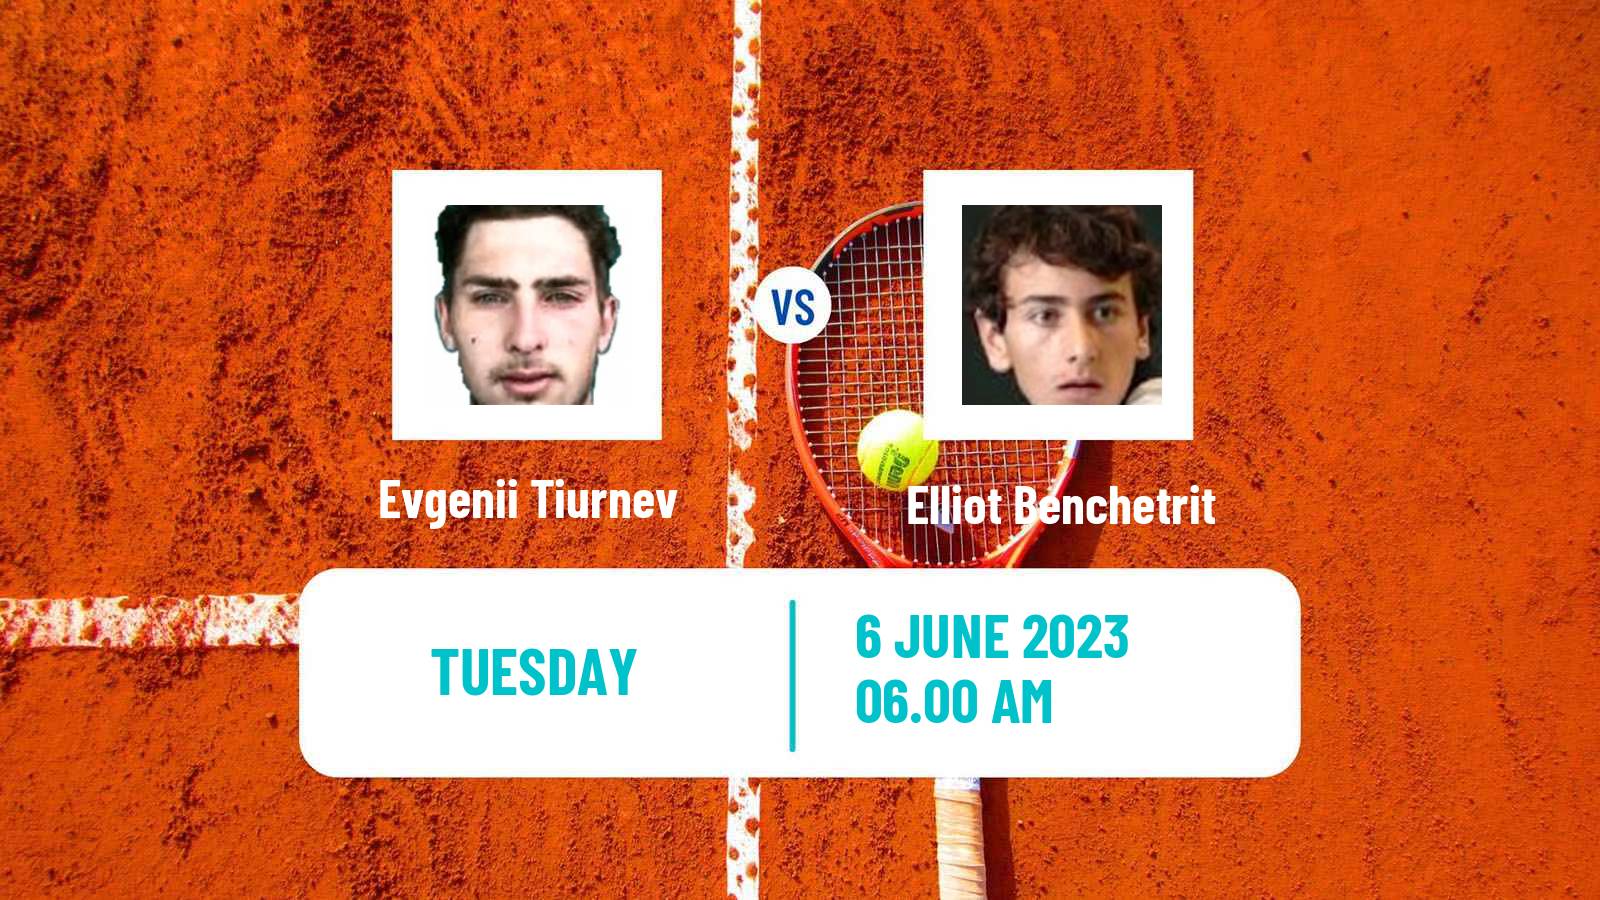 Tennis ITF M25 Kursumlijska Banja 3 Men Evgenii Tiurnev - Elliot Benchetrit